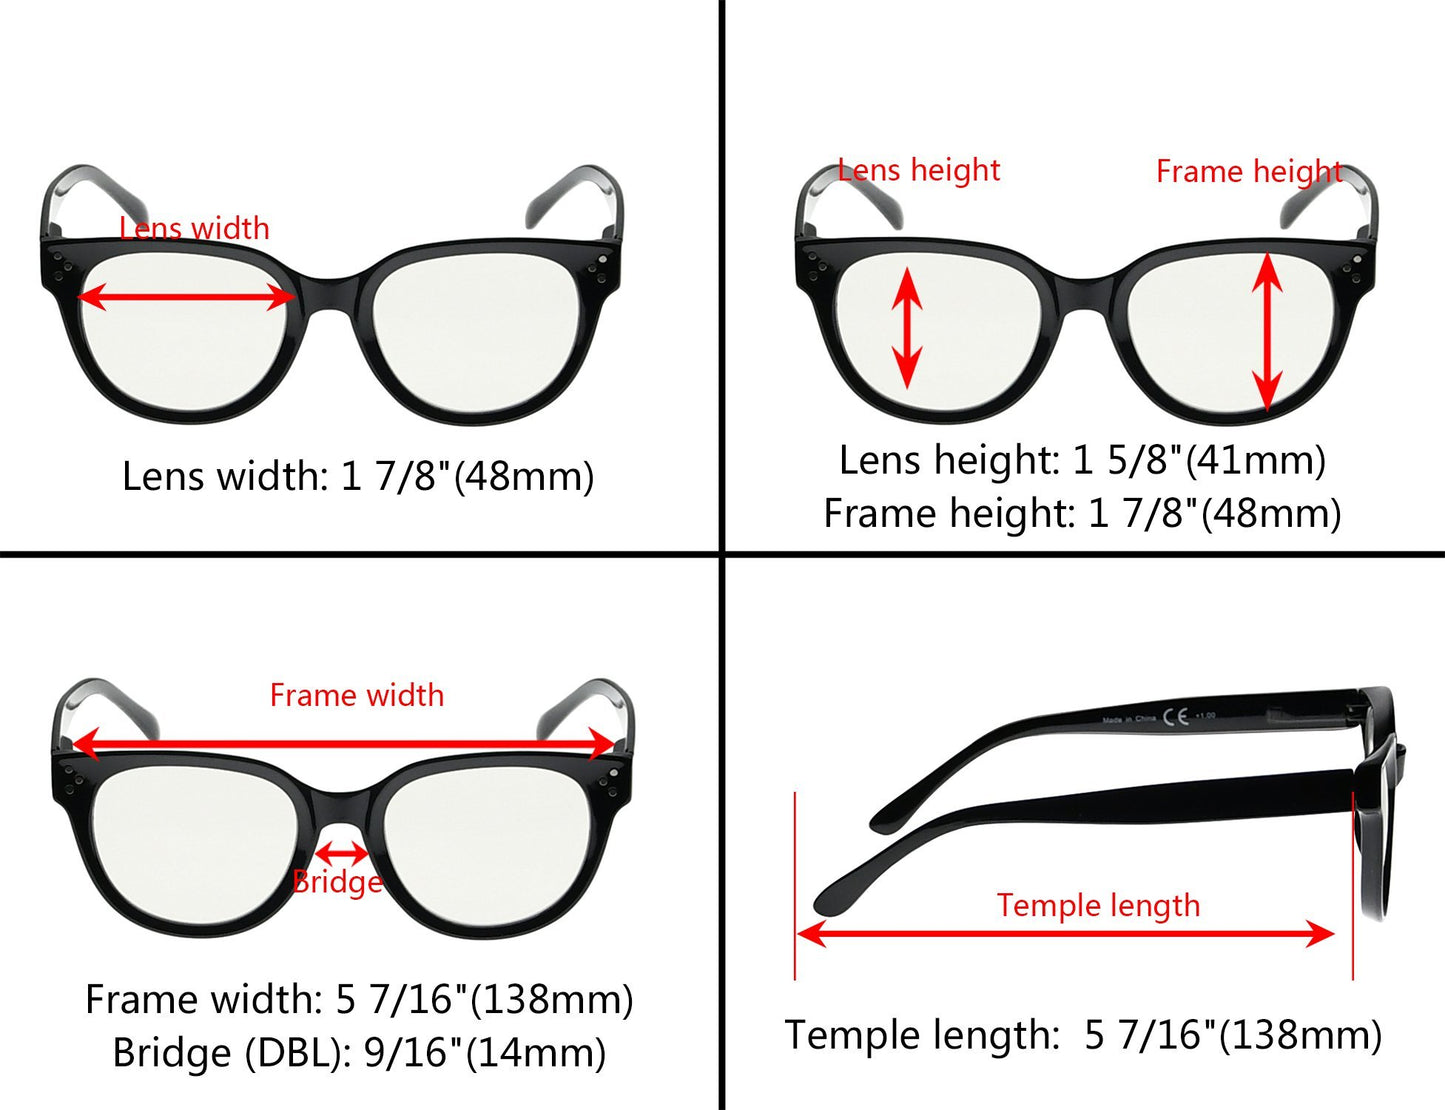 Multifocus Reading Glasses Dimension